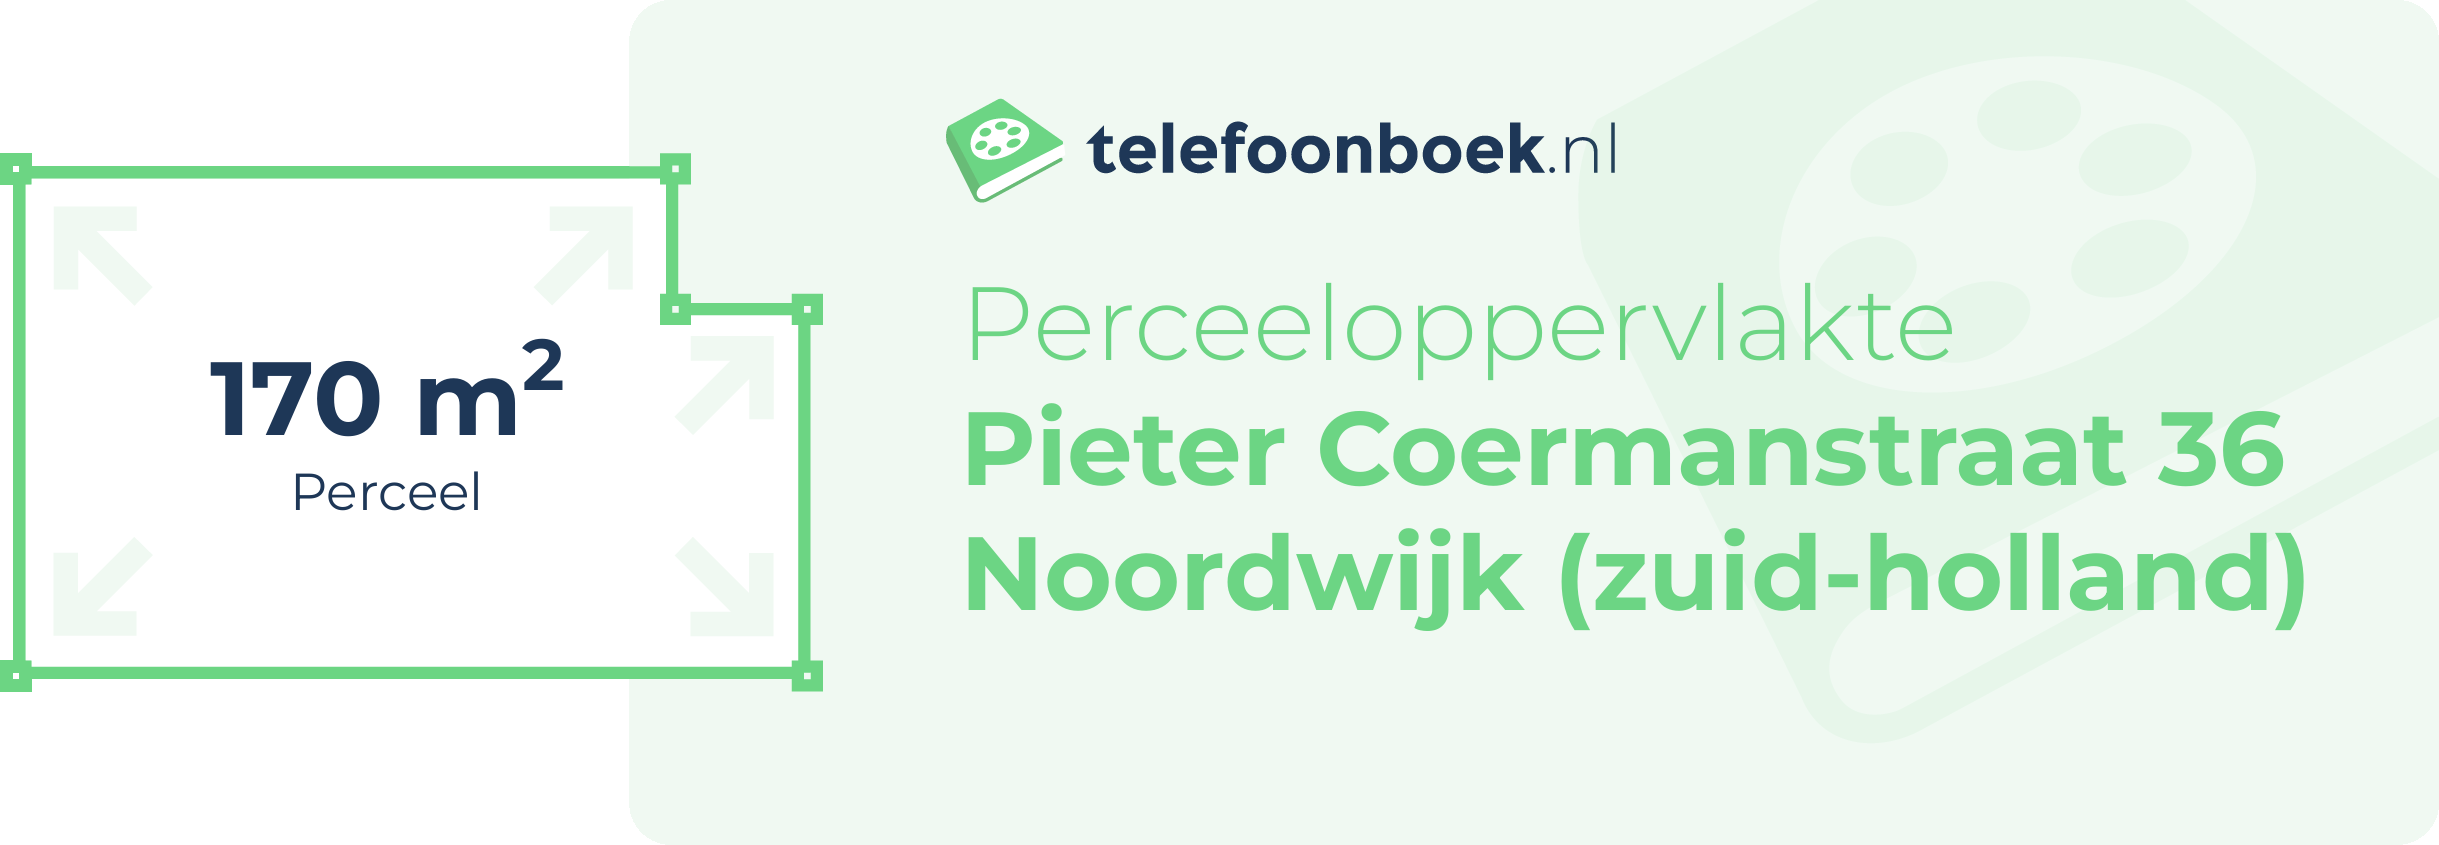 Perceeloppervlakte Pieter Coermanstraat 36 Noordwijk (Zuid-Holland)